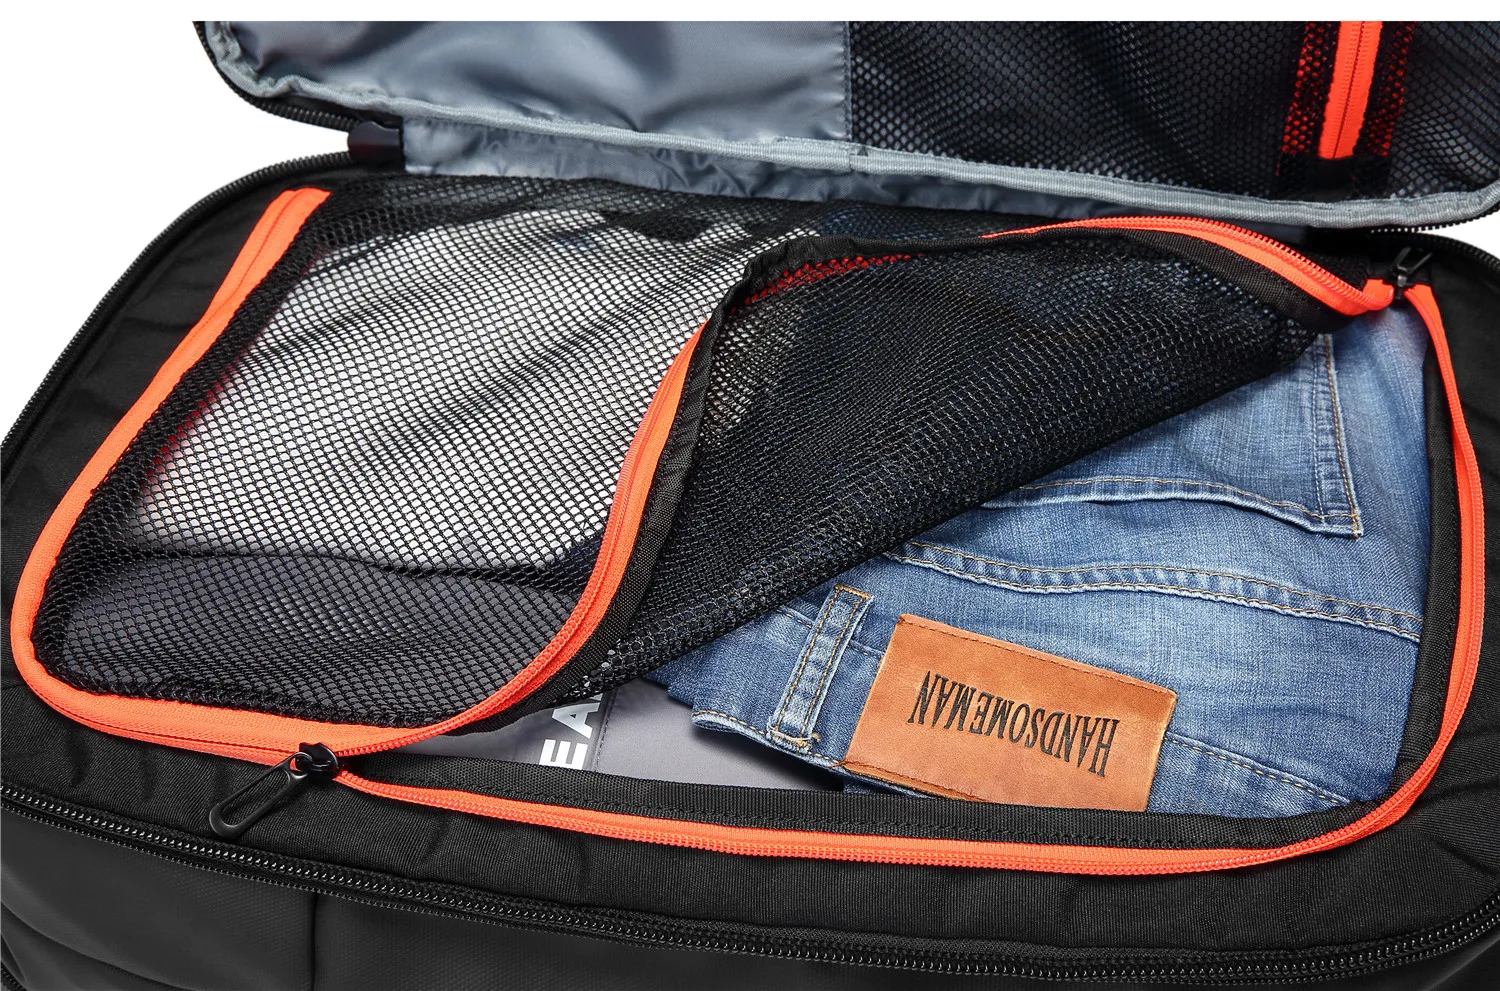 Мужской водонепроницаемый рюкзак с зарядкой от USB 15,6 дюймов для ноутбука, повседневный рюкзак для ноутбука, Мужская школьная Спортивная дорожная сумка, рюкзак для мужчин